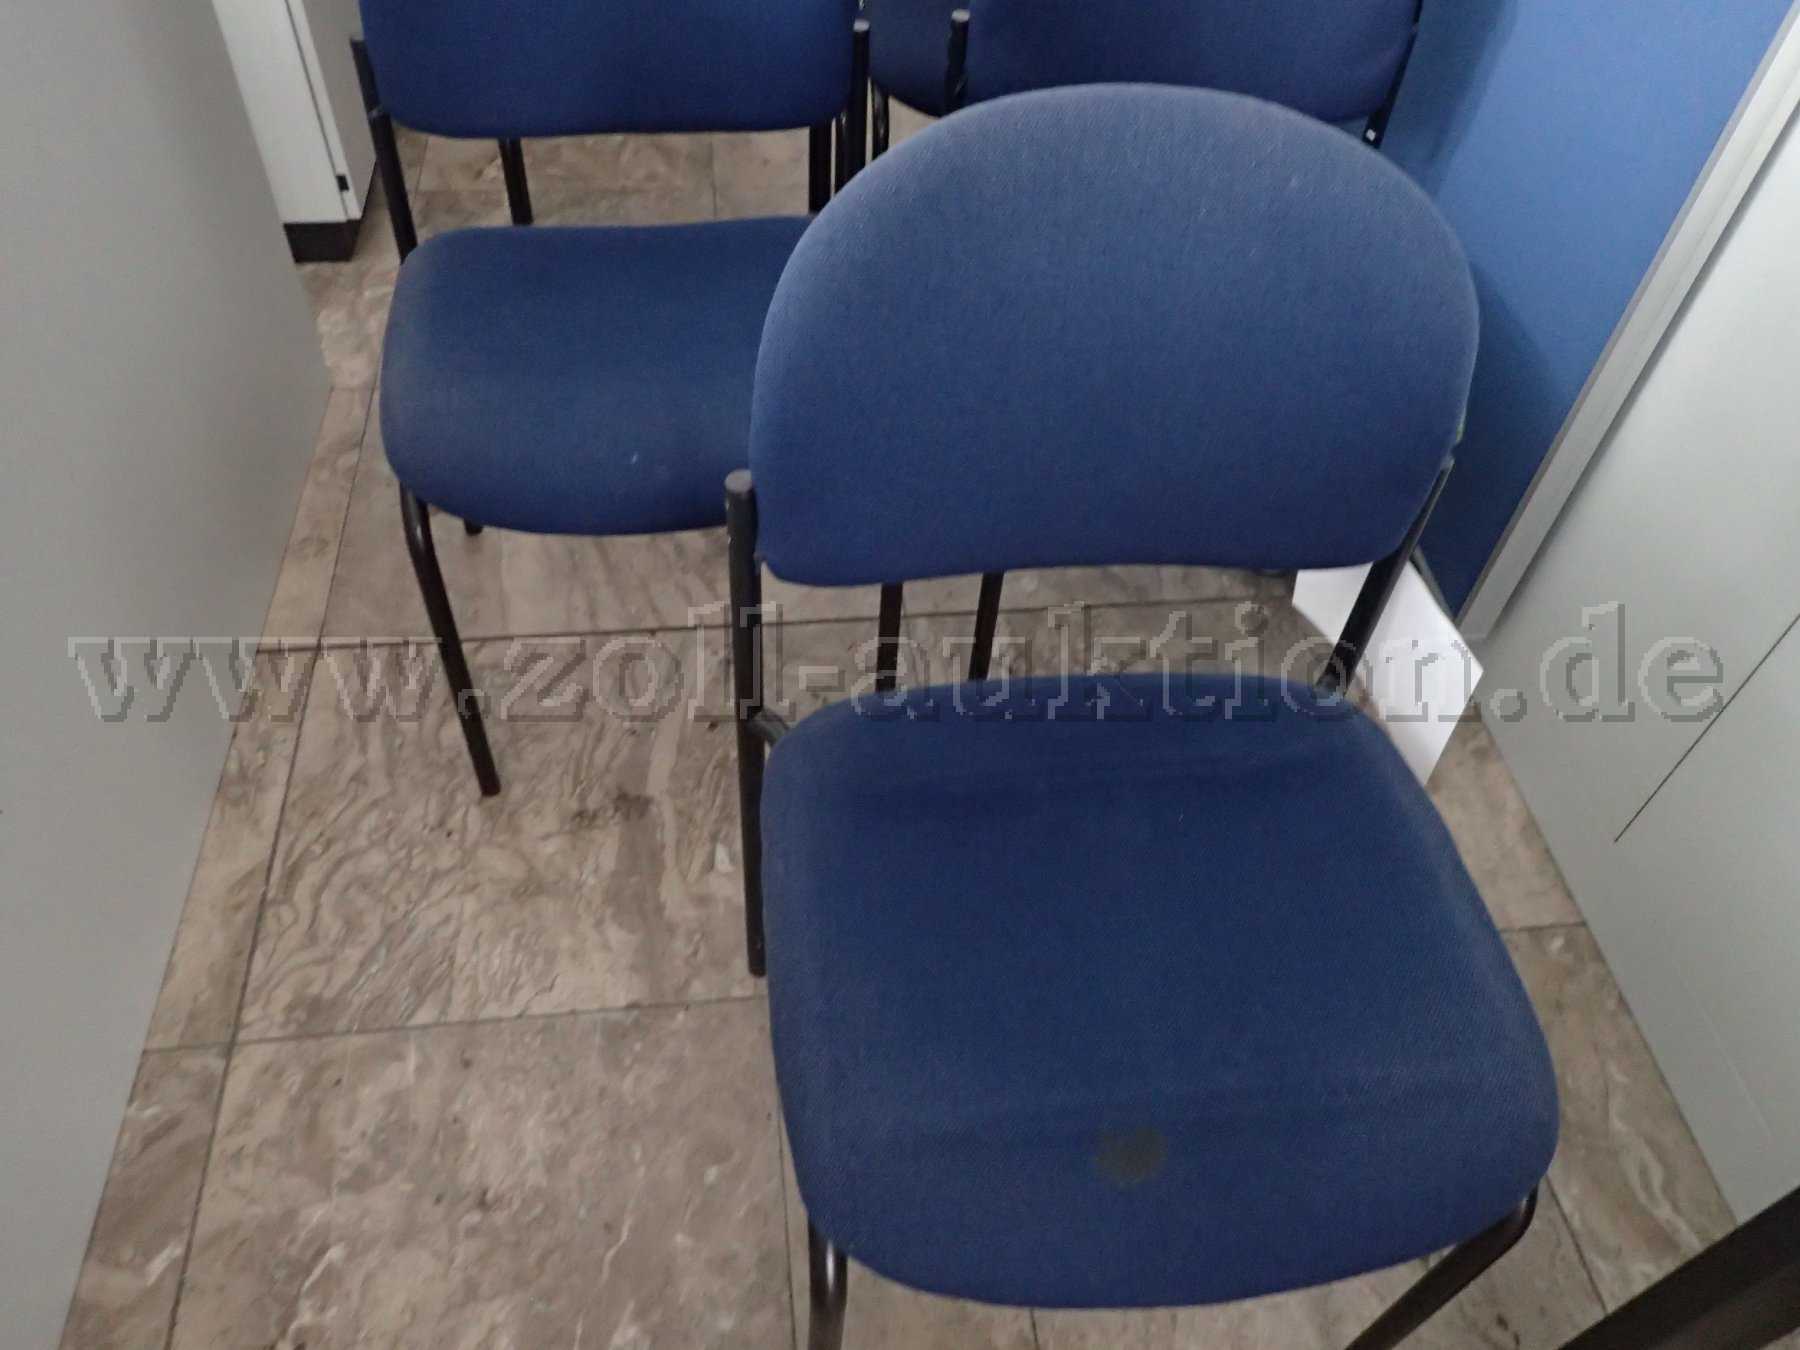 Besucherstühle ohne Armlehne,
Hersteller: Dauphin